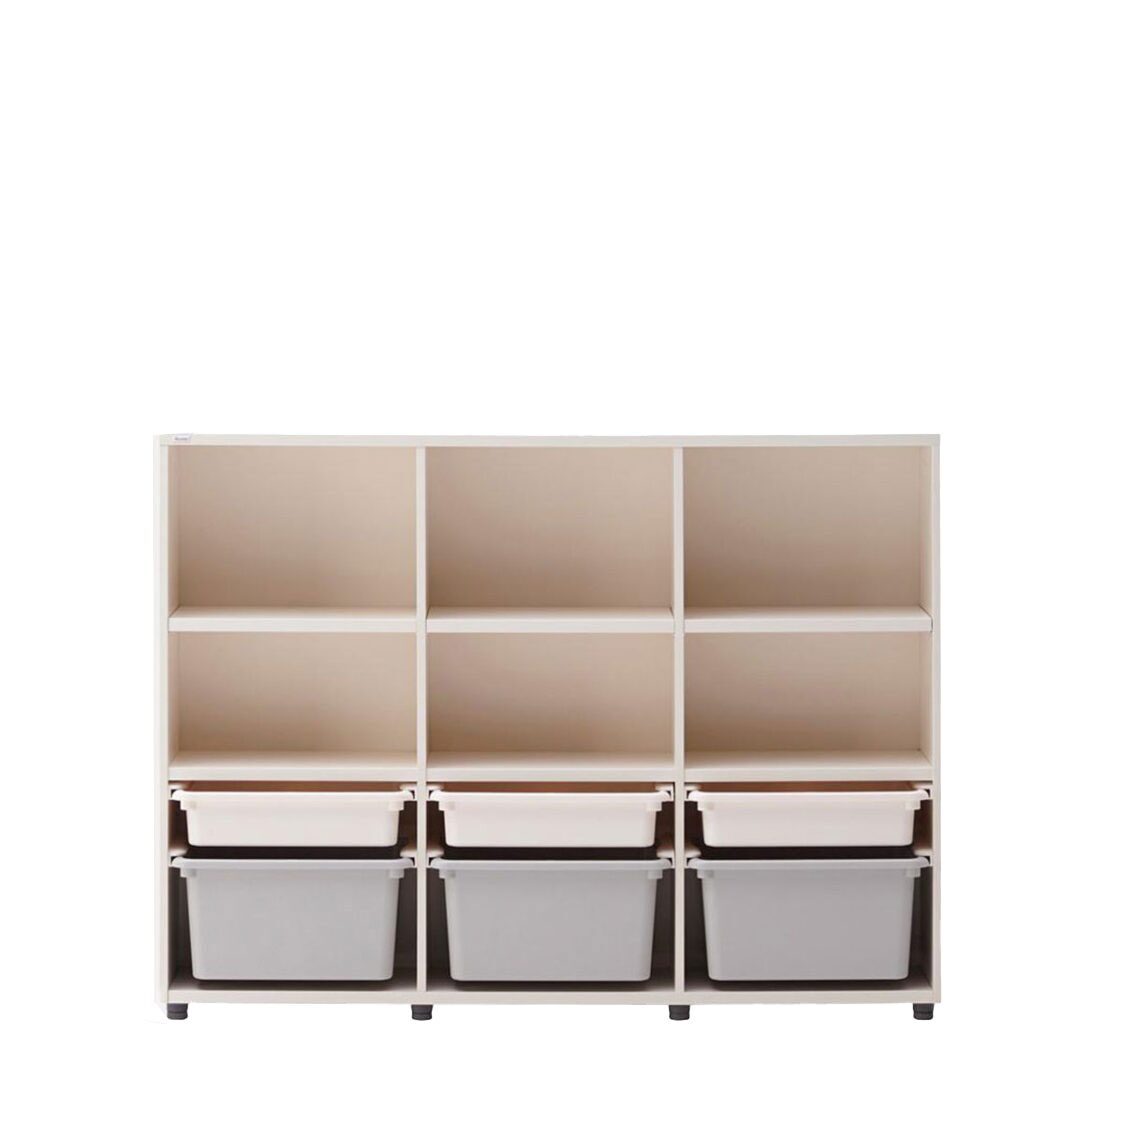 Iloom 3-Story Bookshelf with PL Box Storage 1400W Grey